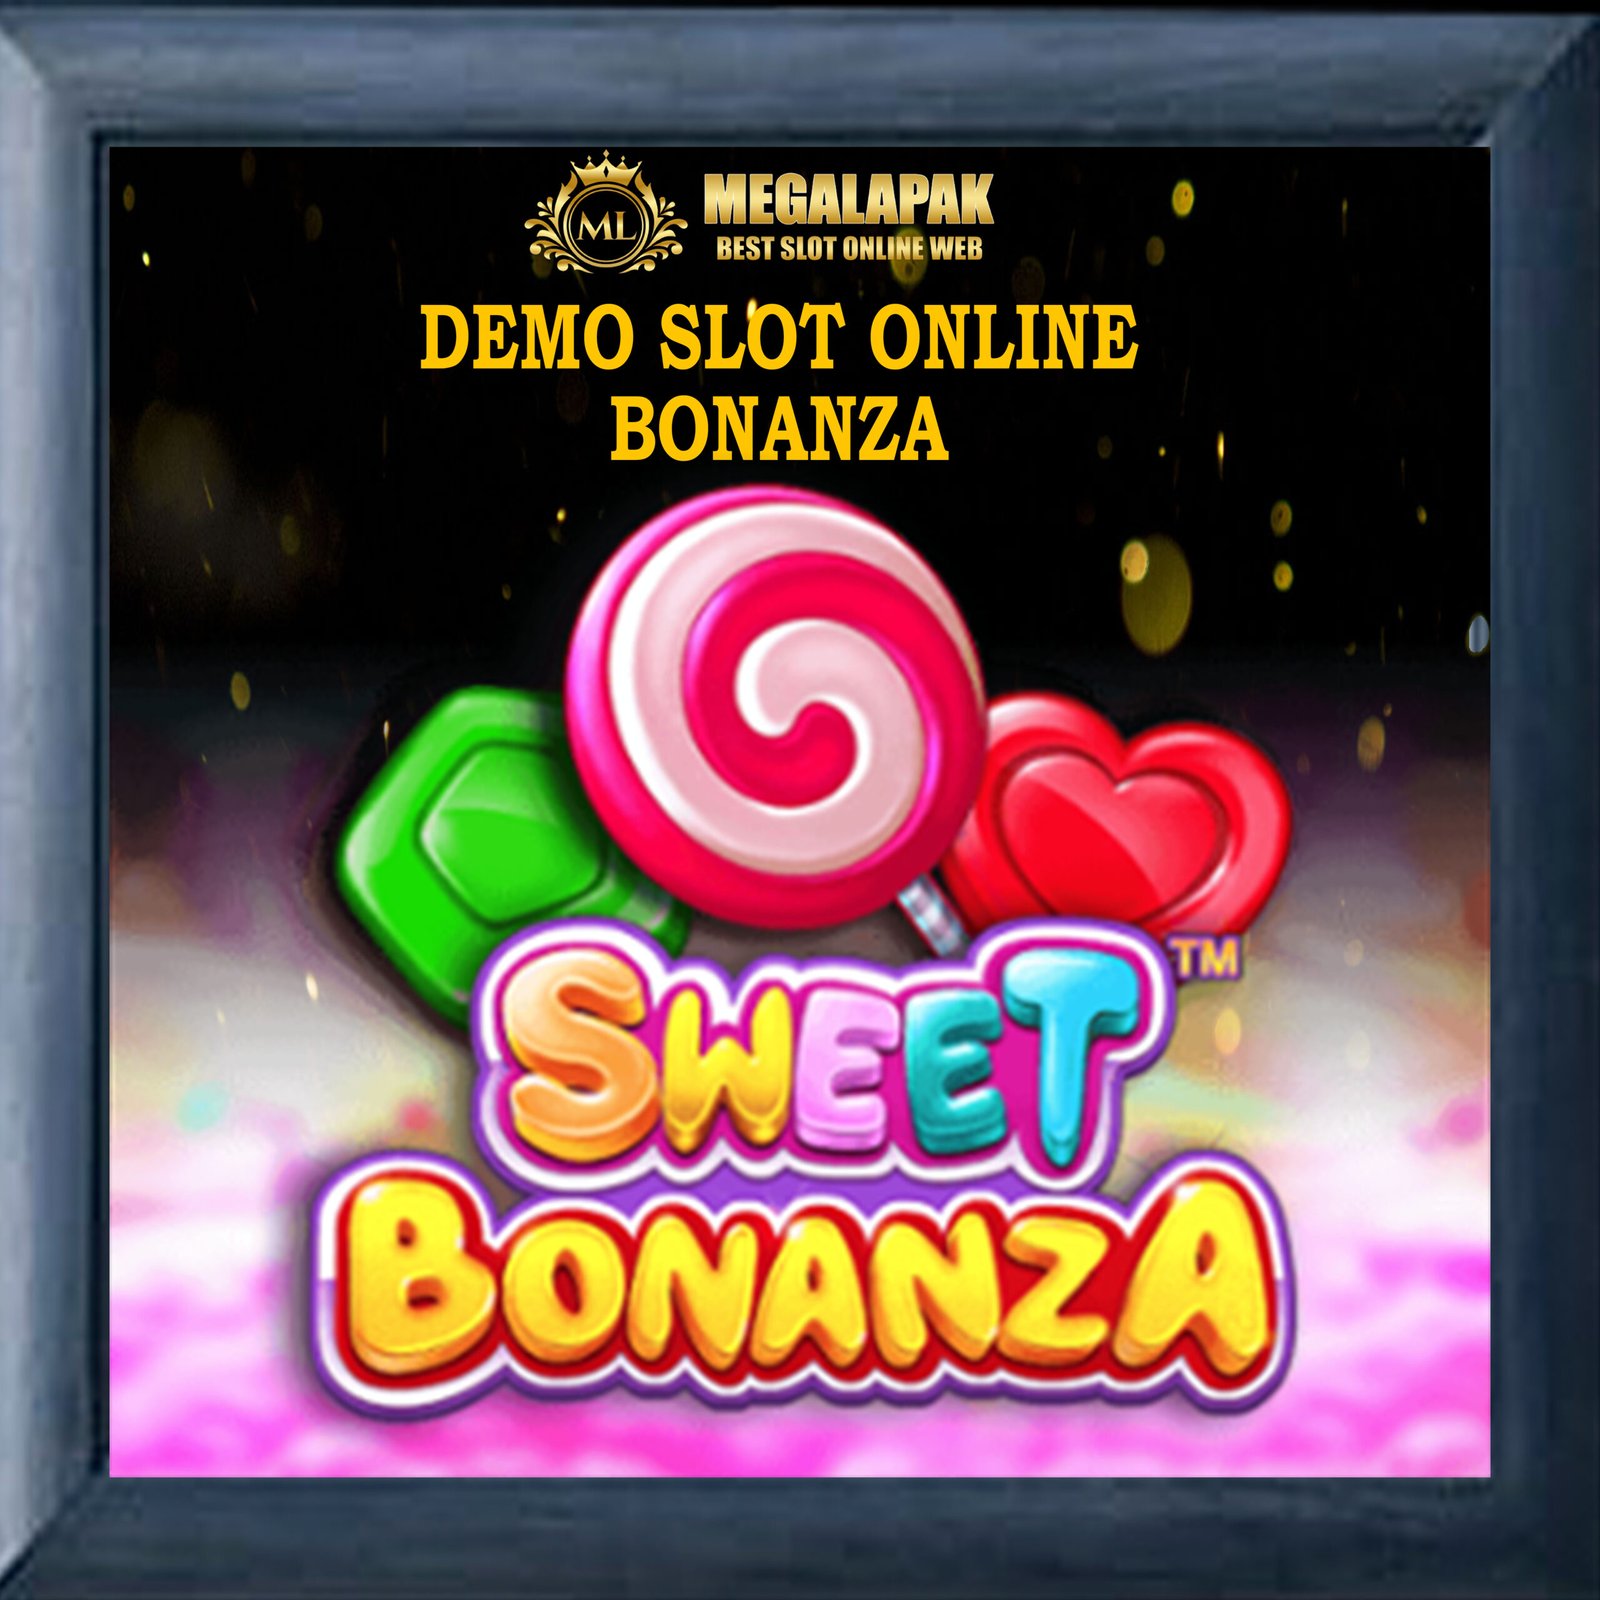 Demo Slot Online Bonanza Megalapak